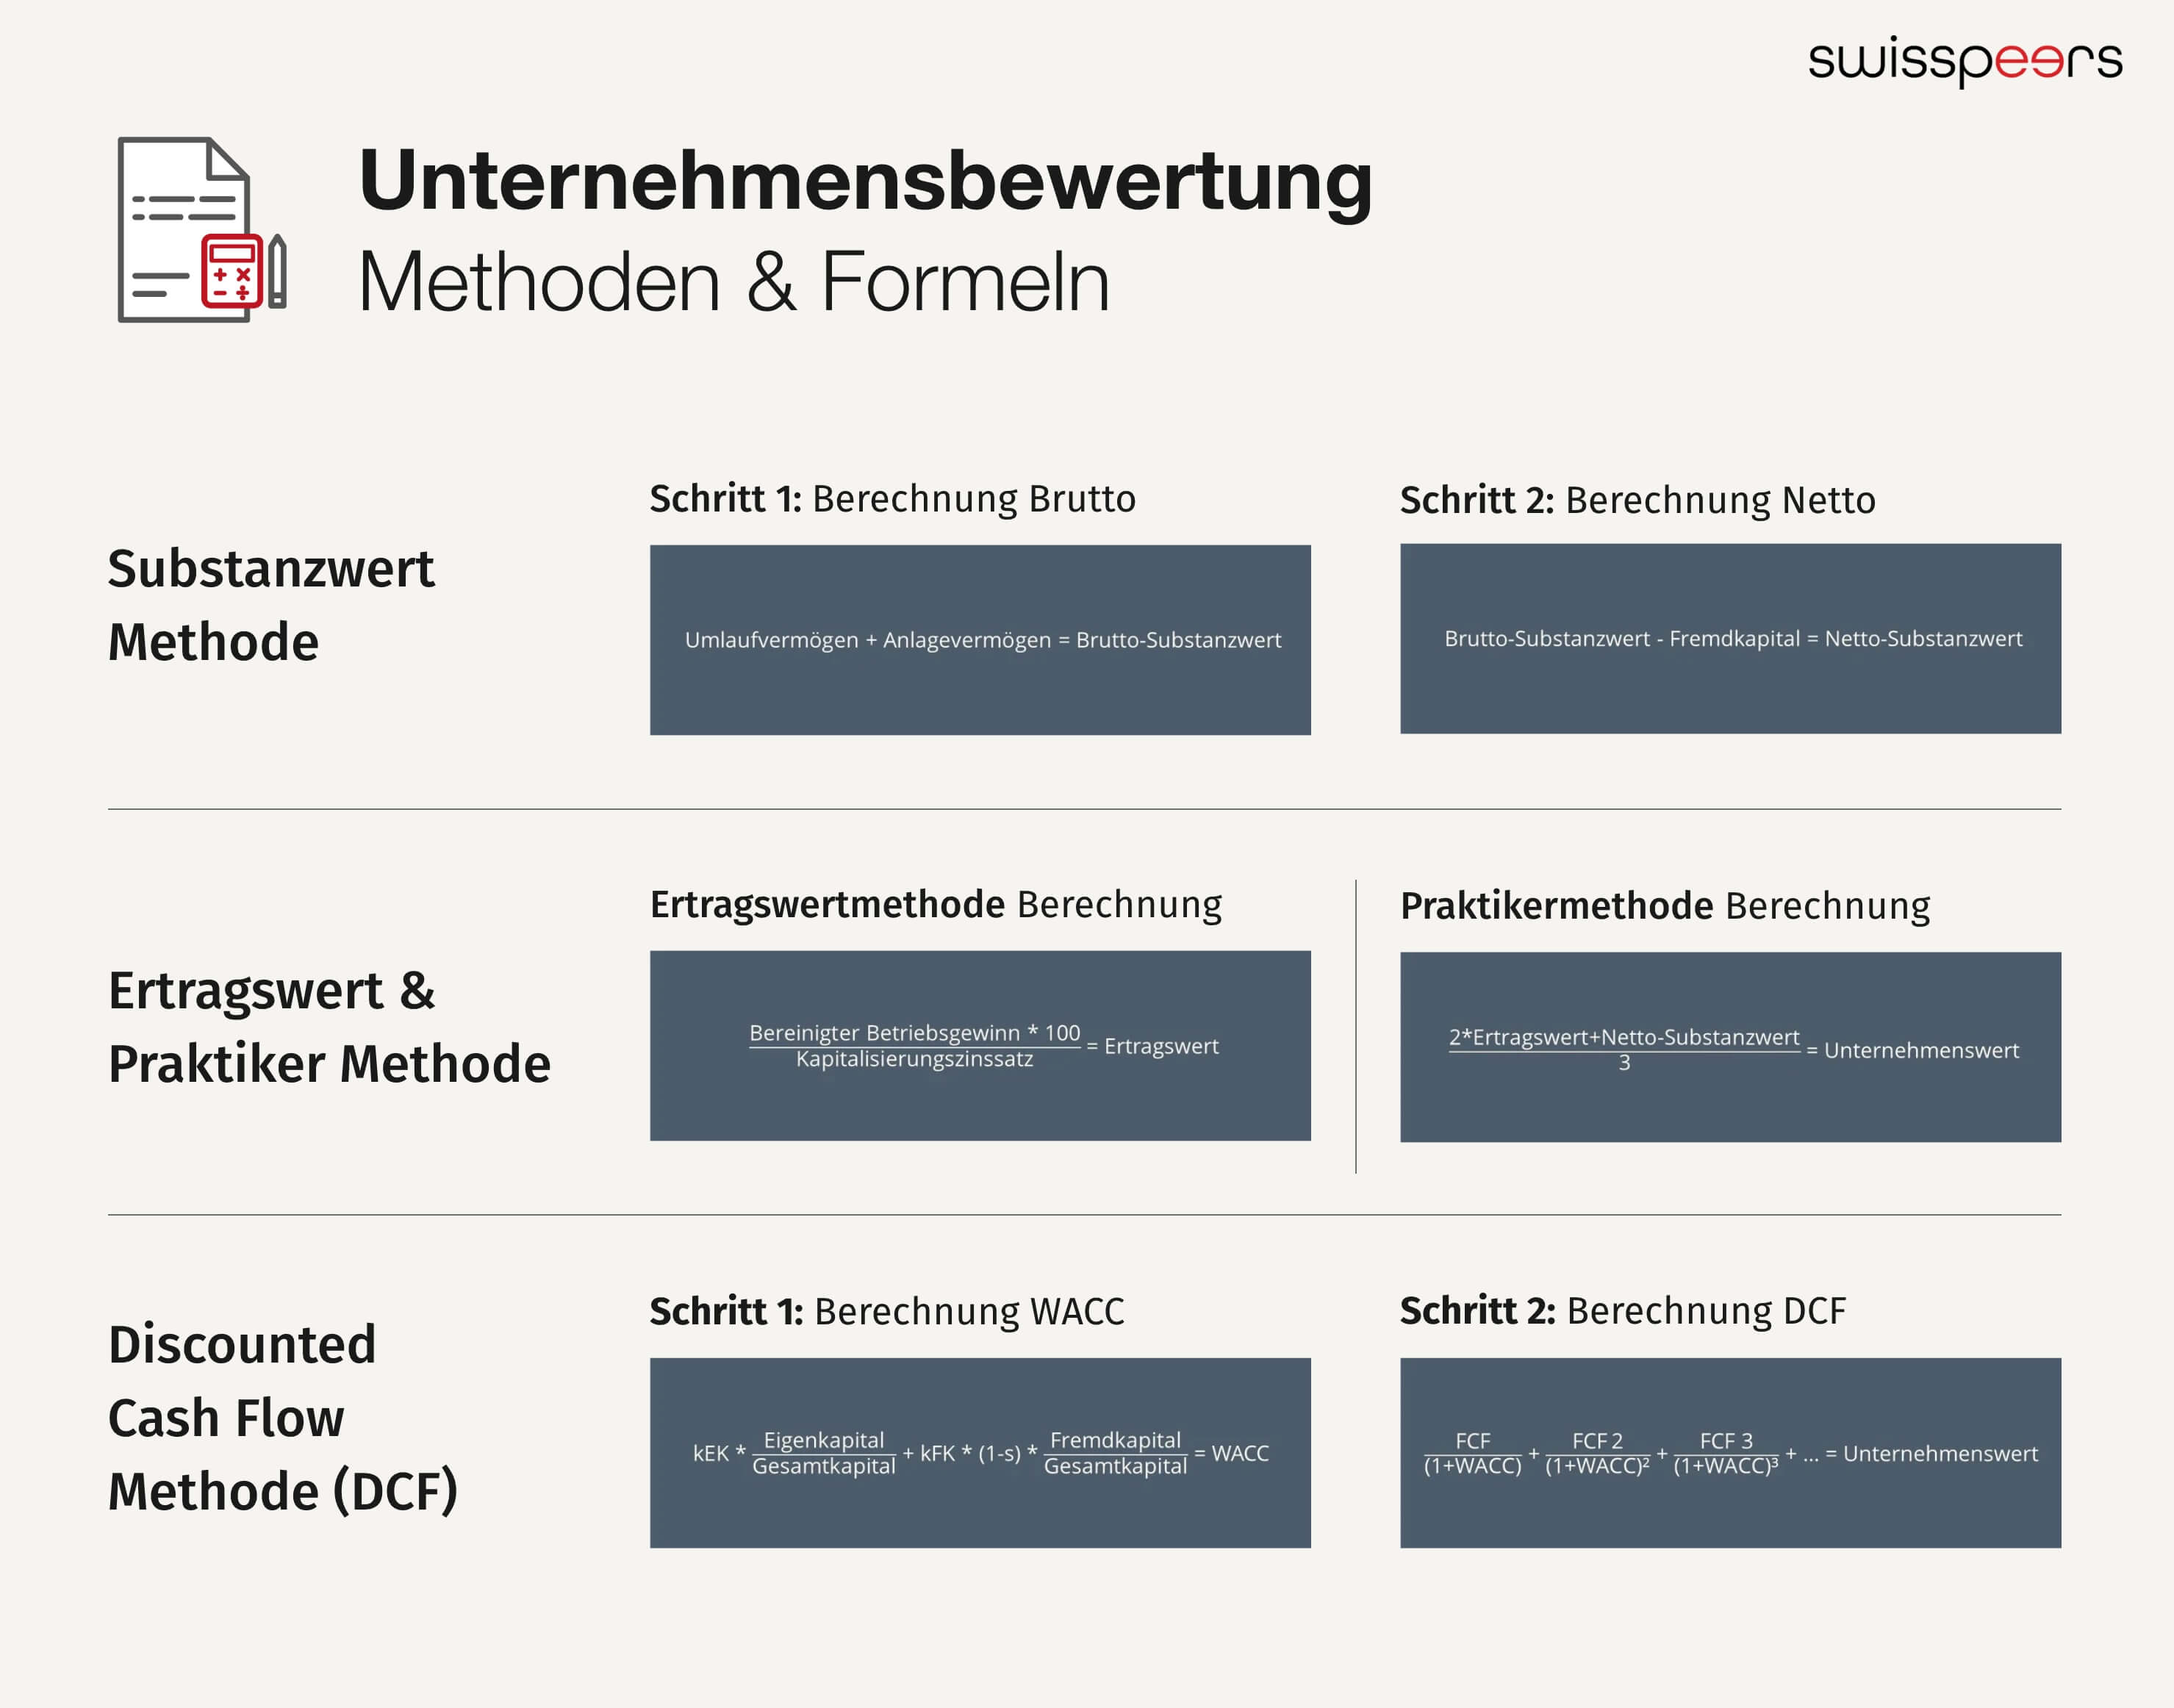 unternehmensbewertung_formeln_methoden_schweiz